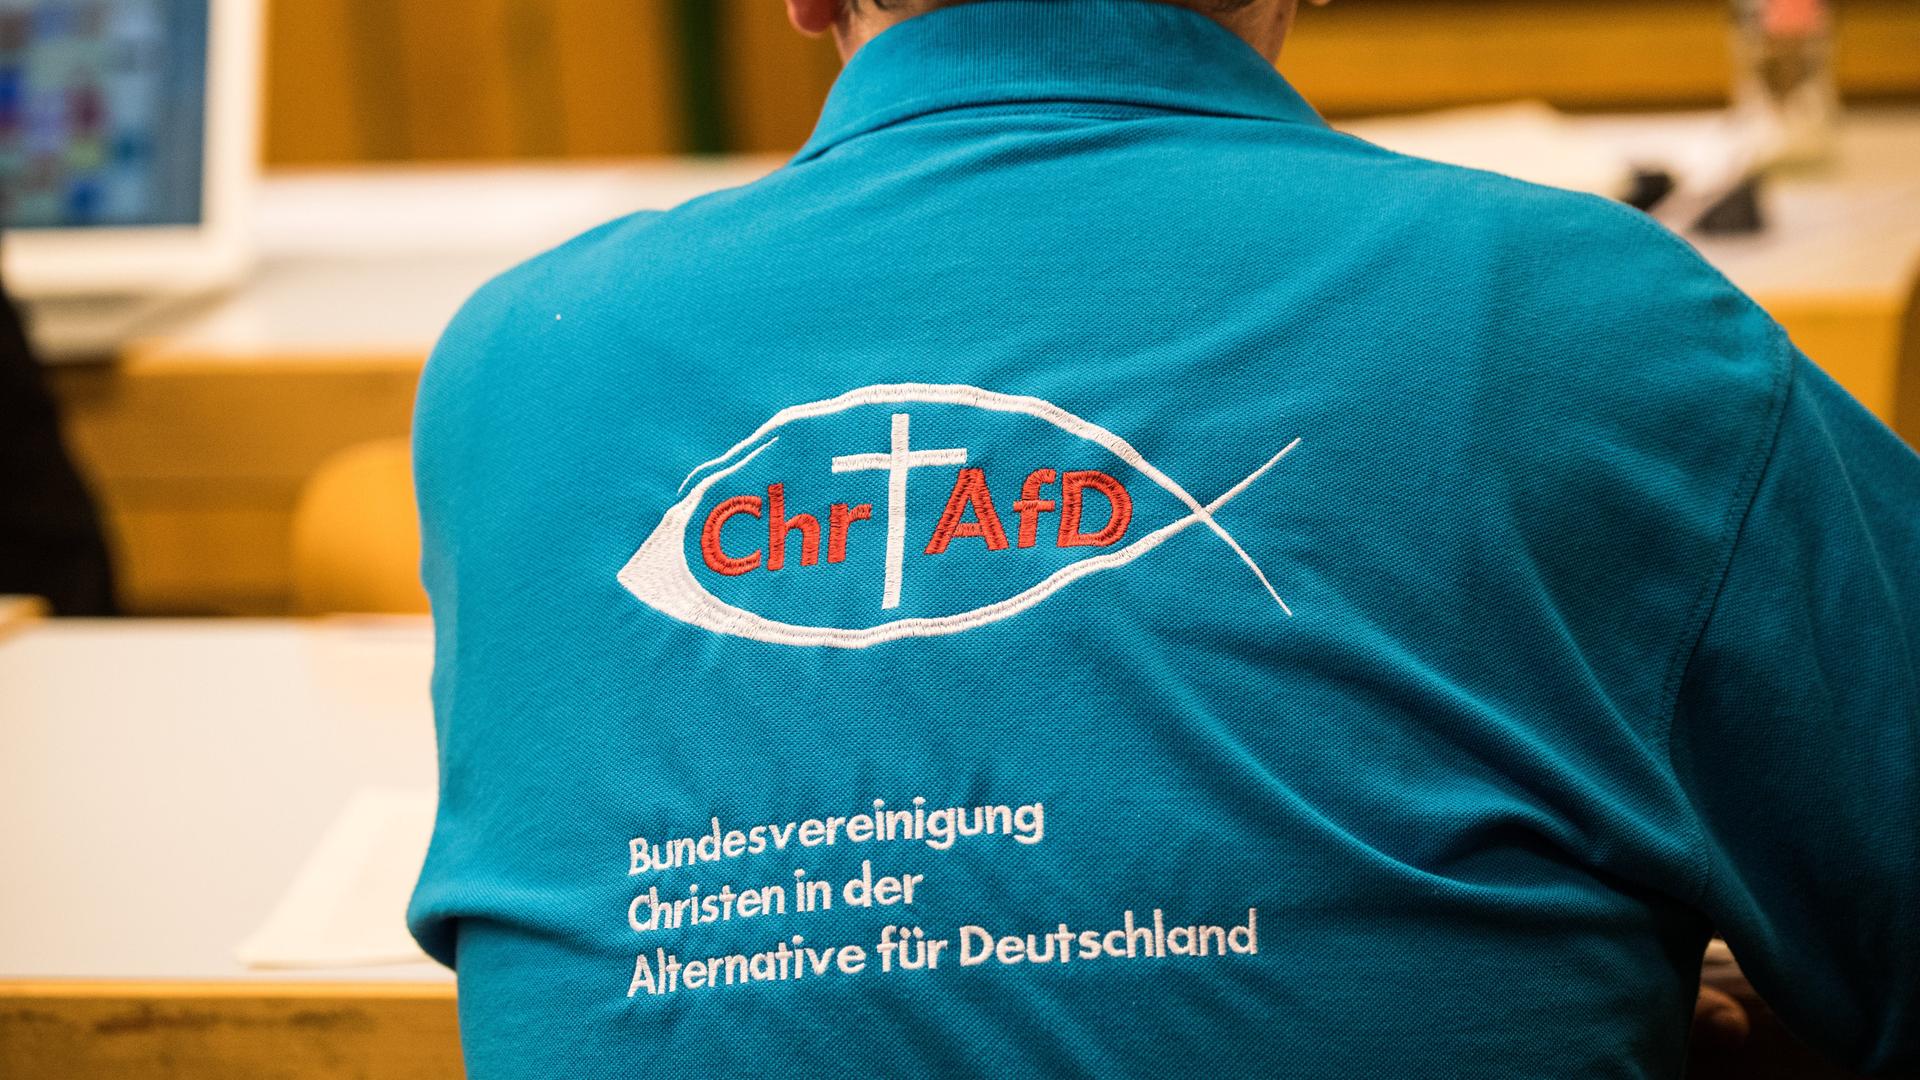 Ein Parteimitglied trägt ein Polohemd mit der Aufschrift "Bundesvereinigung Christen in der Alternative für Deutschland".